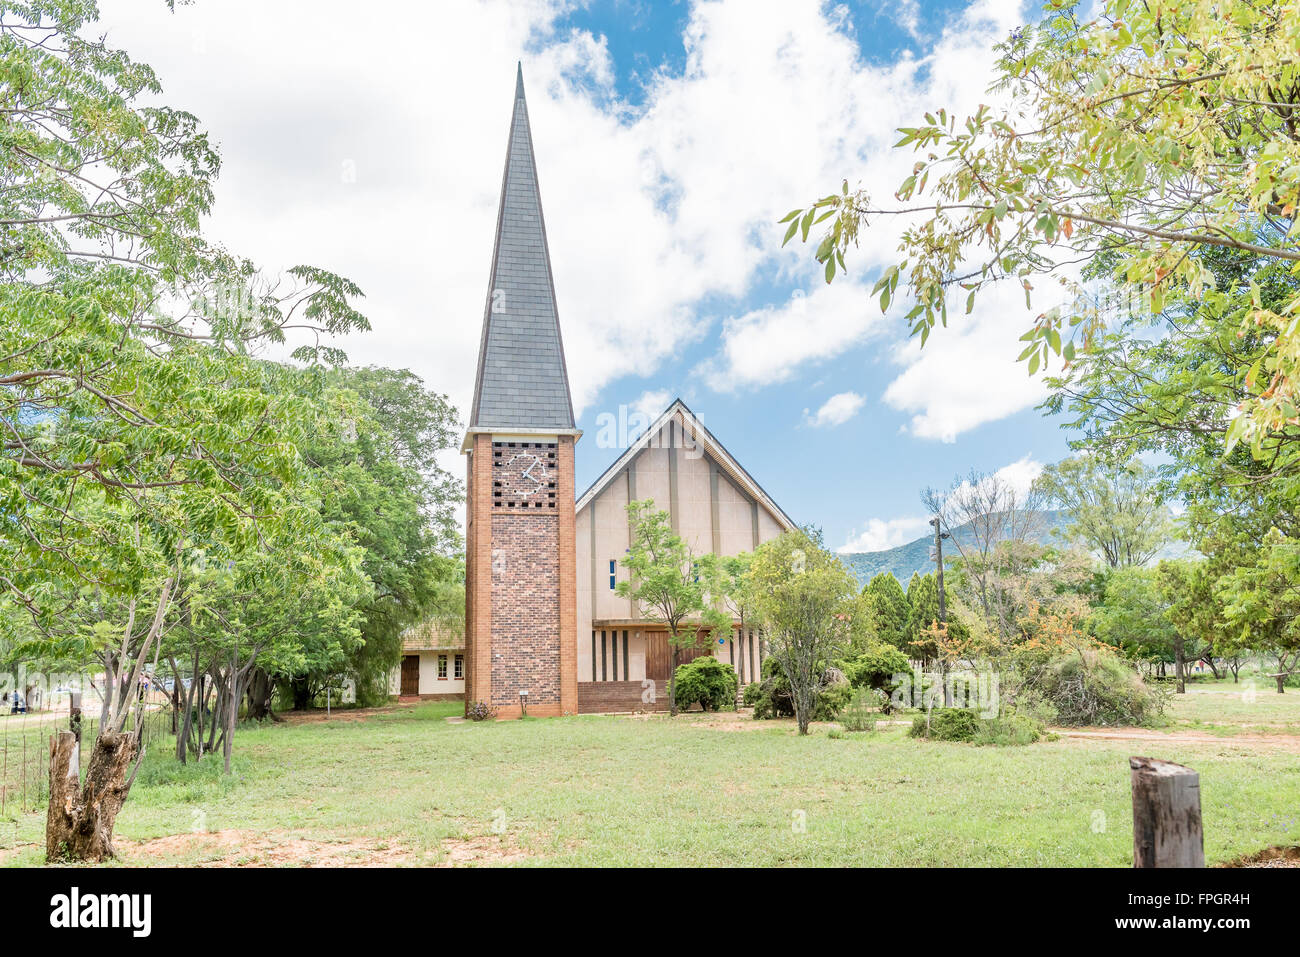 COOKHOUSE, SUD AFRICA - 19 febbraio 2016: la chiesa olandese riformata in Cookhouse, una piccola città nella provincia del Capo orientale Foto Stock